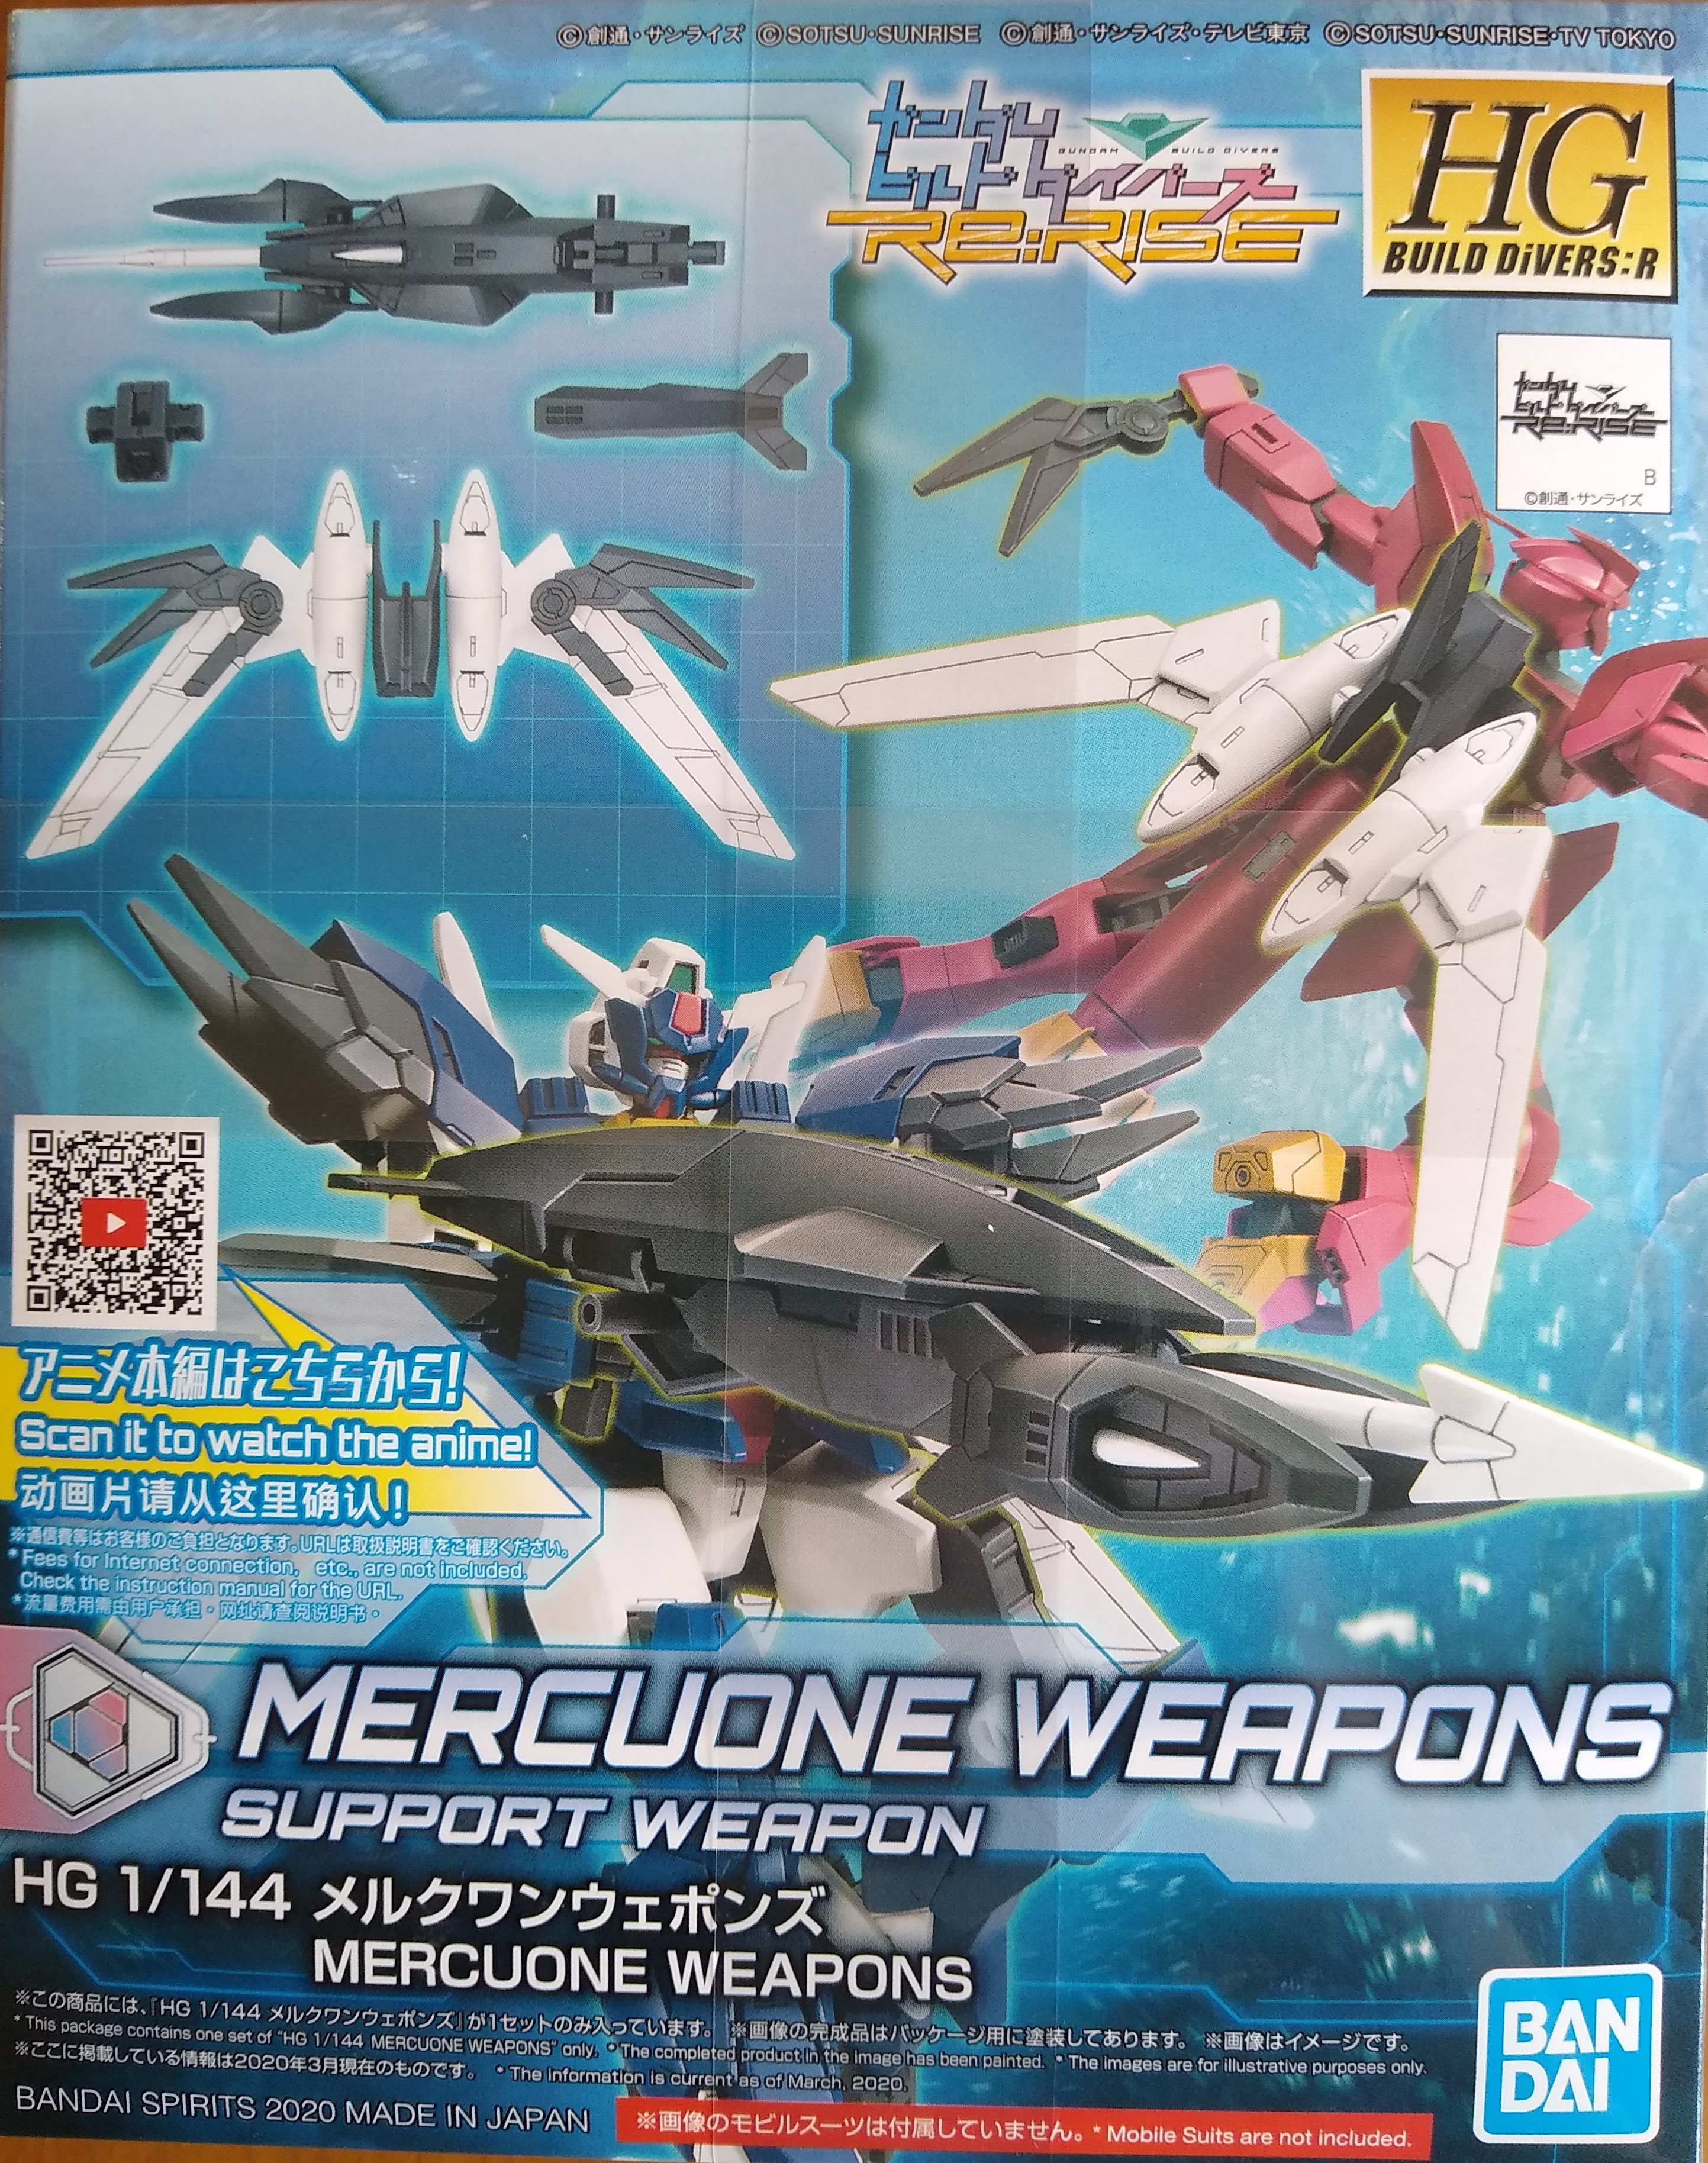 Box of mercuone weapons